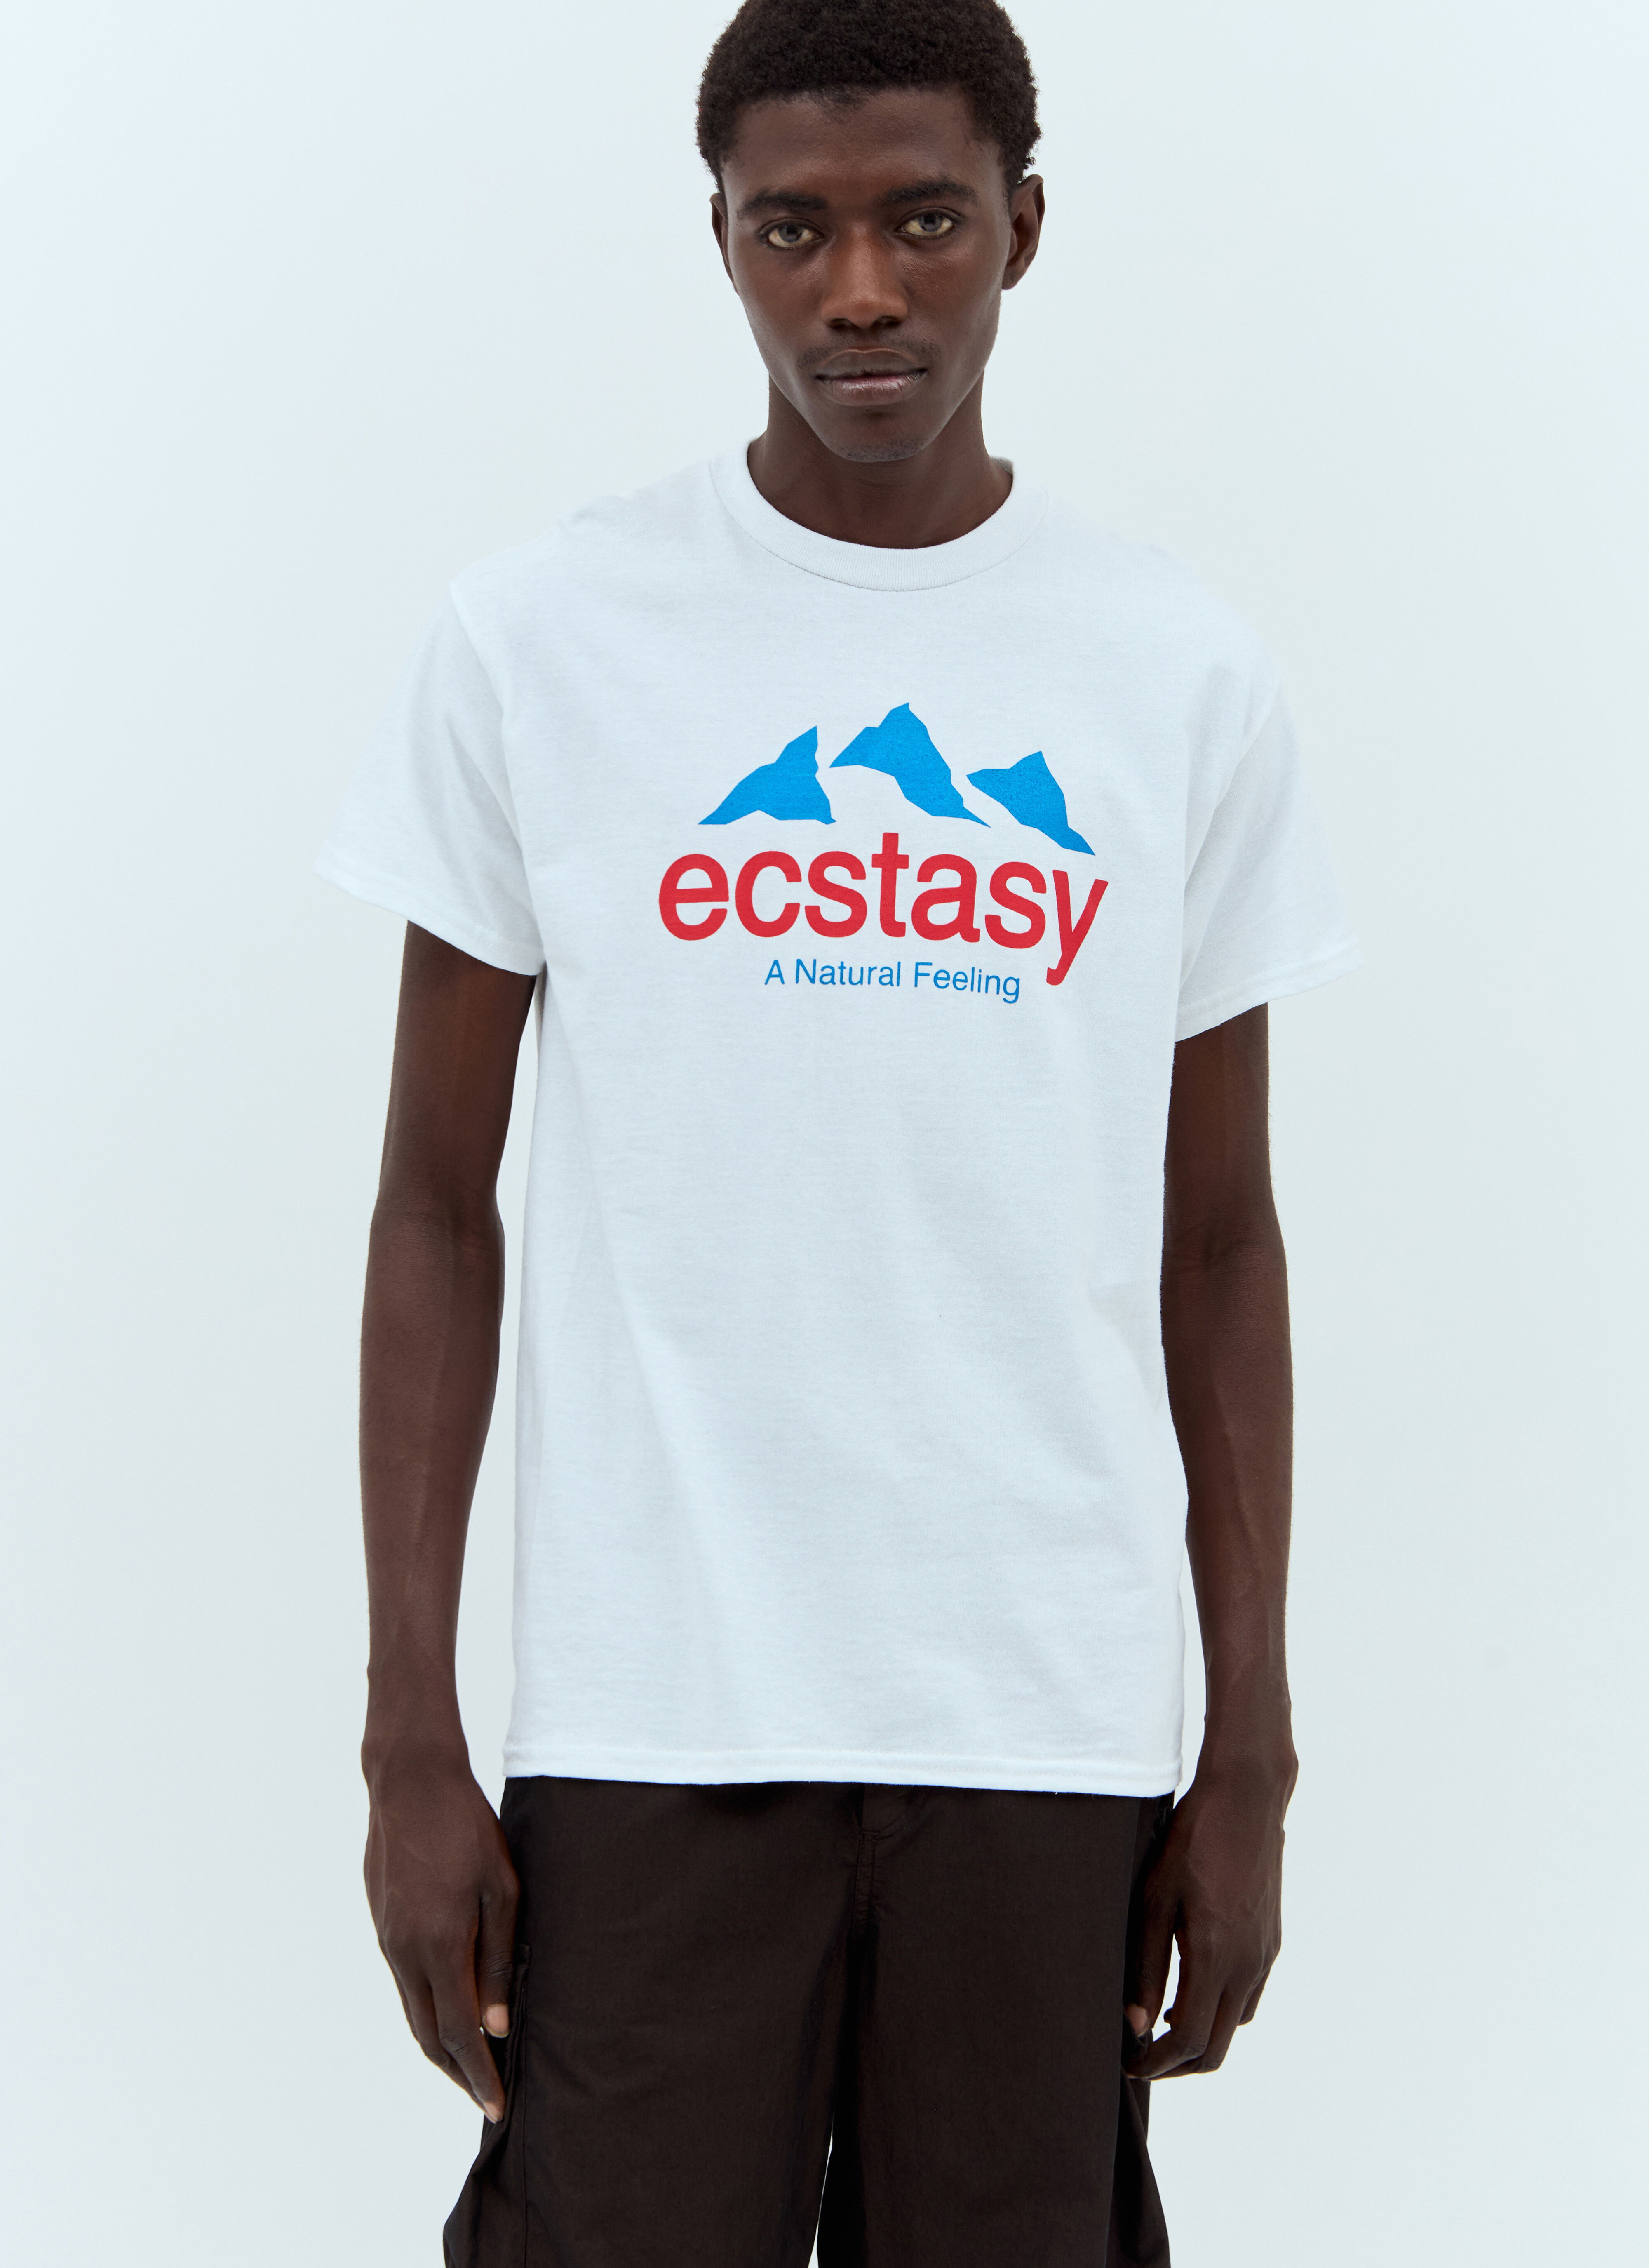 CONNIE COSTAS Ecstasy T 恤 蓝色 coc0158004